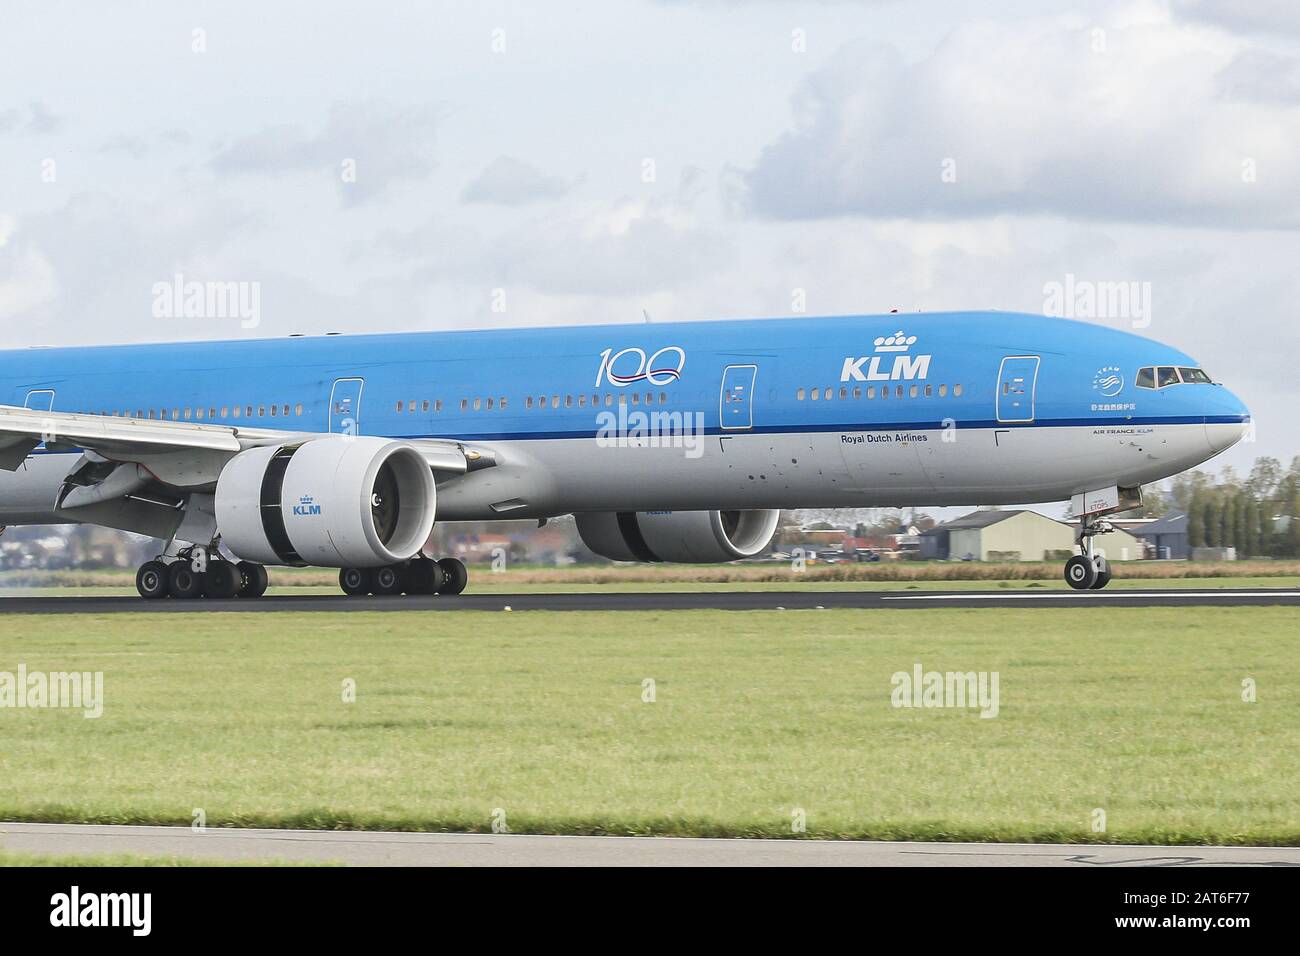 Ámsterdam, Países Bajos. 26 de enero de 2020. Un avión de cuerpo ancho Boeing 777-300 de KLM Royal Dutch Airlines aterriza en el aeropuerto Schiphol AMS EHAM de Ámsterdam, en los países Bajos, en la pista de Polderbaan. El avión cuenta con la certificación ETOPS para vuelos transatlánticos. Crédito: Nik Oiko/Sopa Images/Zuma Wire/Alamy Live News Foto de stock